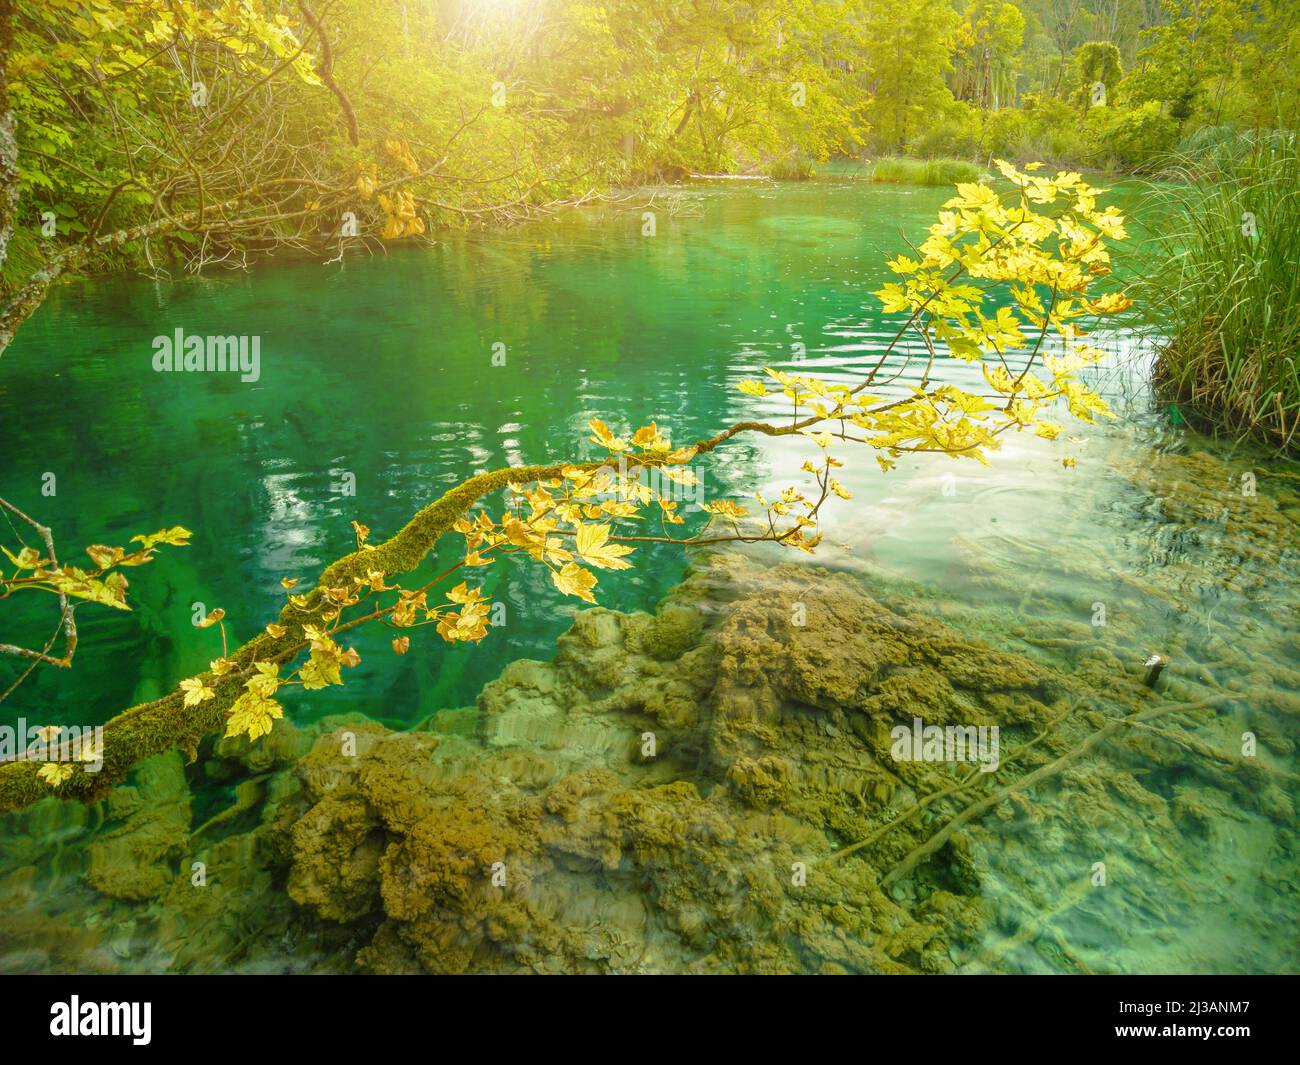 Érable du lac Milino Jezero du parc national des lacs de Plitvice en Croatie, région de Lika. Patrimoine mondial de l'UNESCO de la Croatie appelé Plitvicka Jezera. Banque D'Images